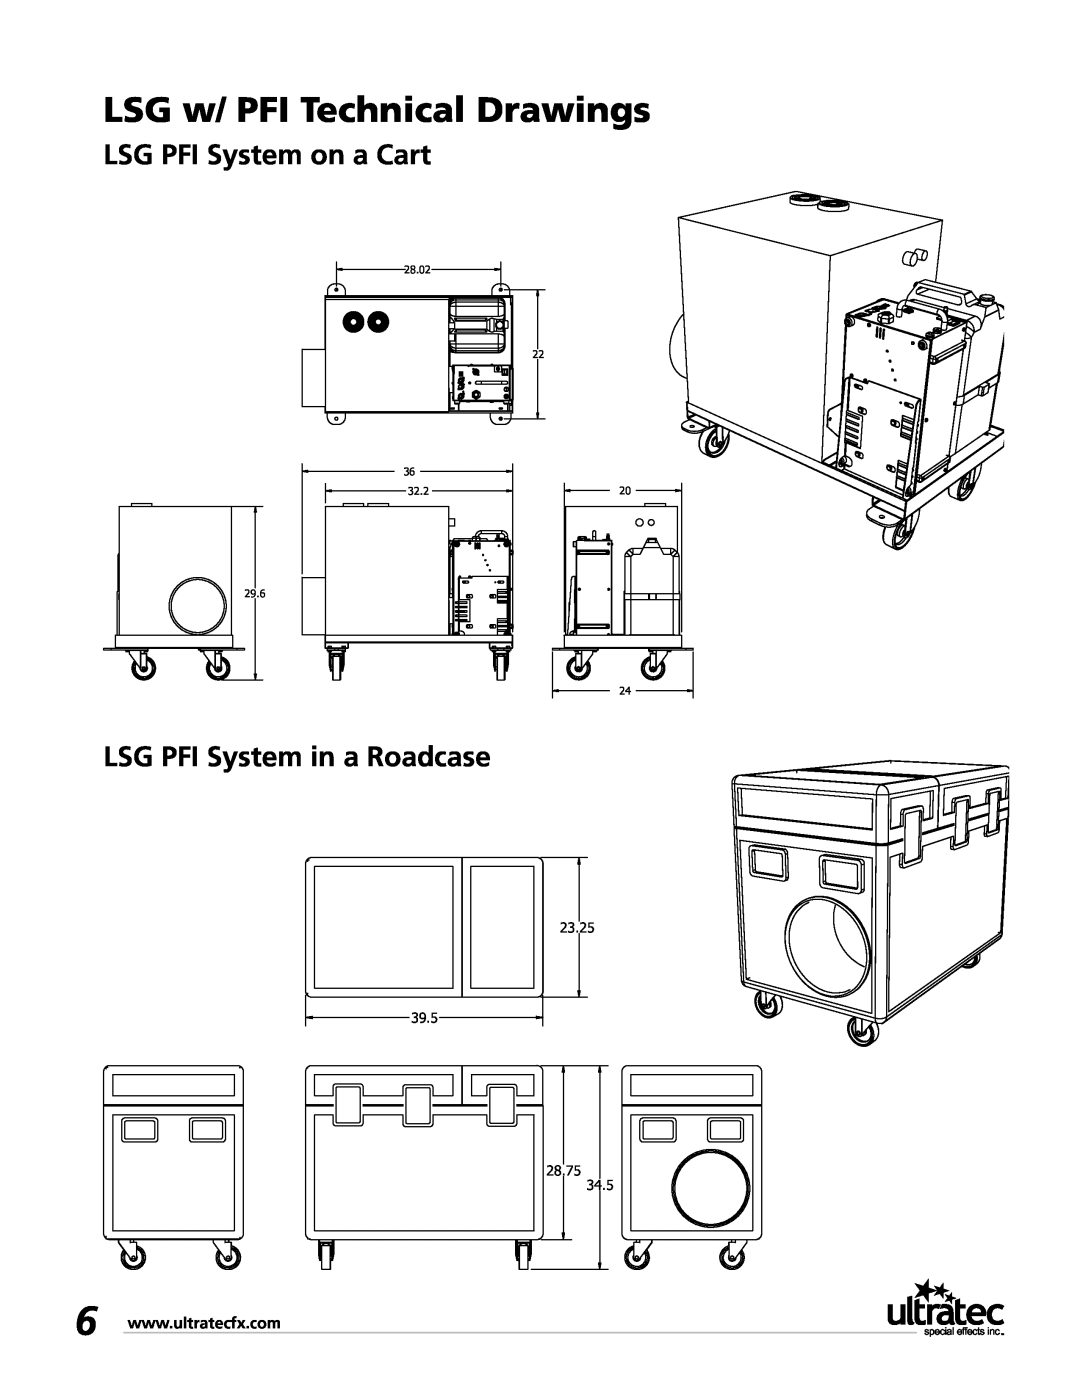 Ultratec PFI-9D LSG w/ PFI Technical Drawings, LSG PFI System on a Cart, LSG PFI System in a Roadcase, 23.25 39.5, 28.02 